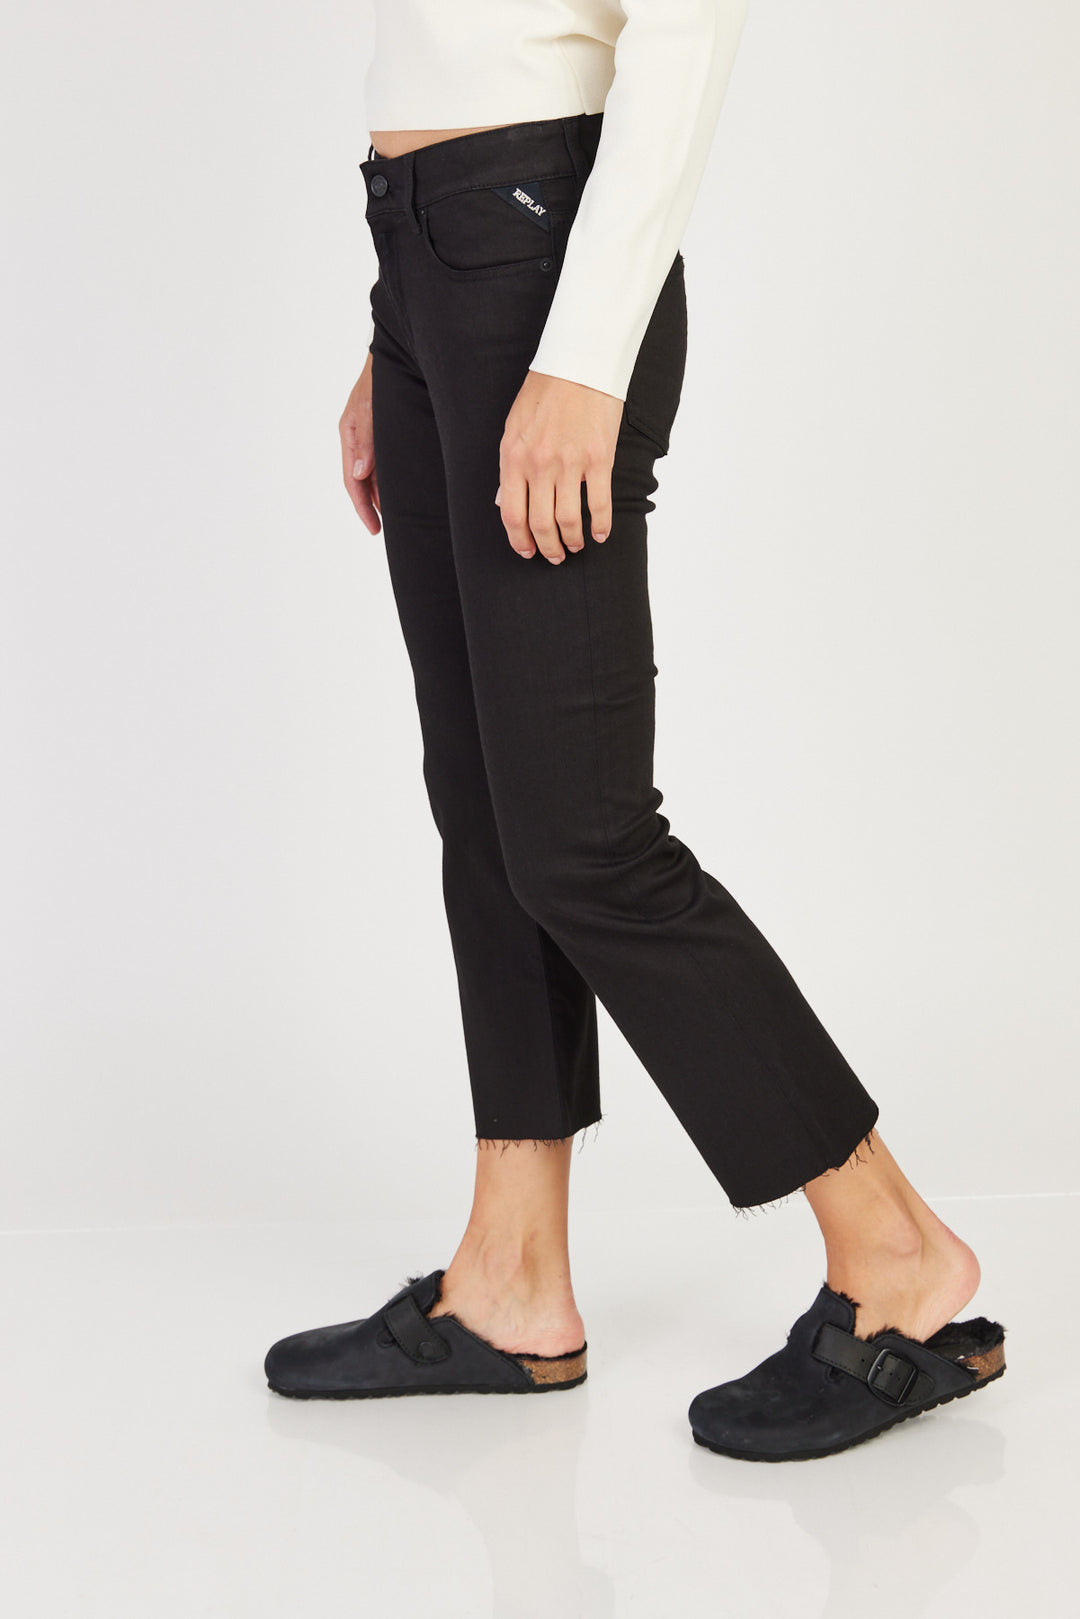 ג'ינס Pantaloni מתרחב בצבע שחור